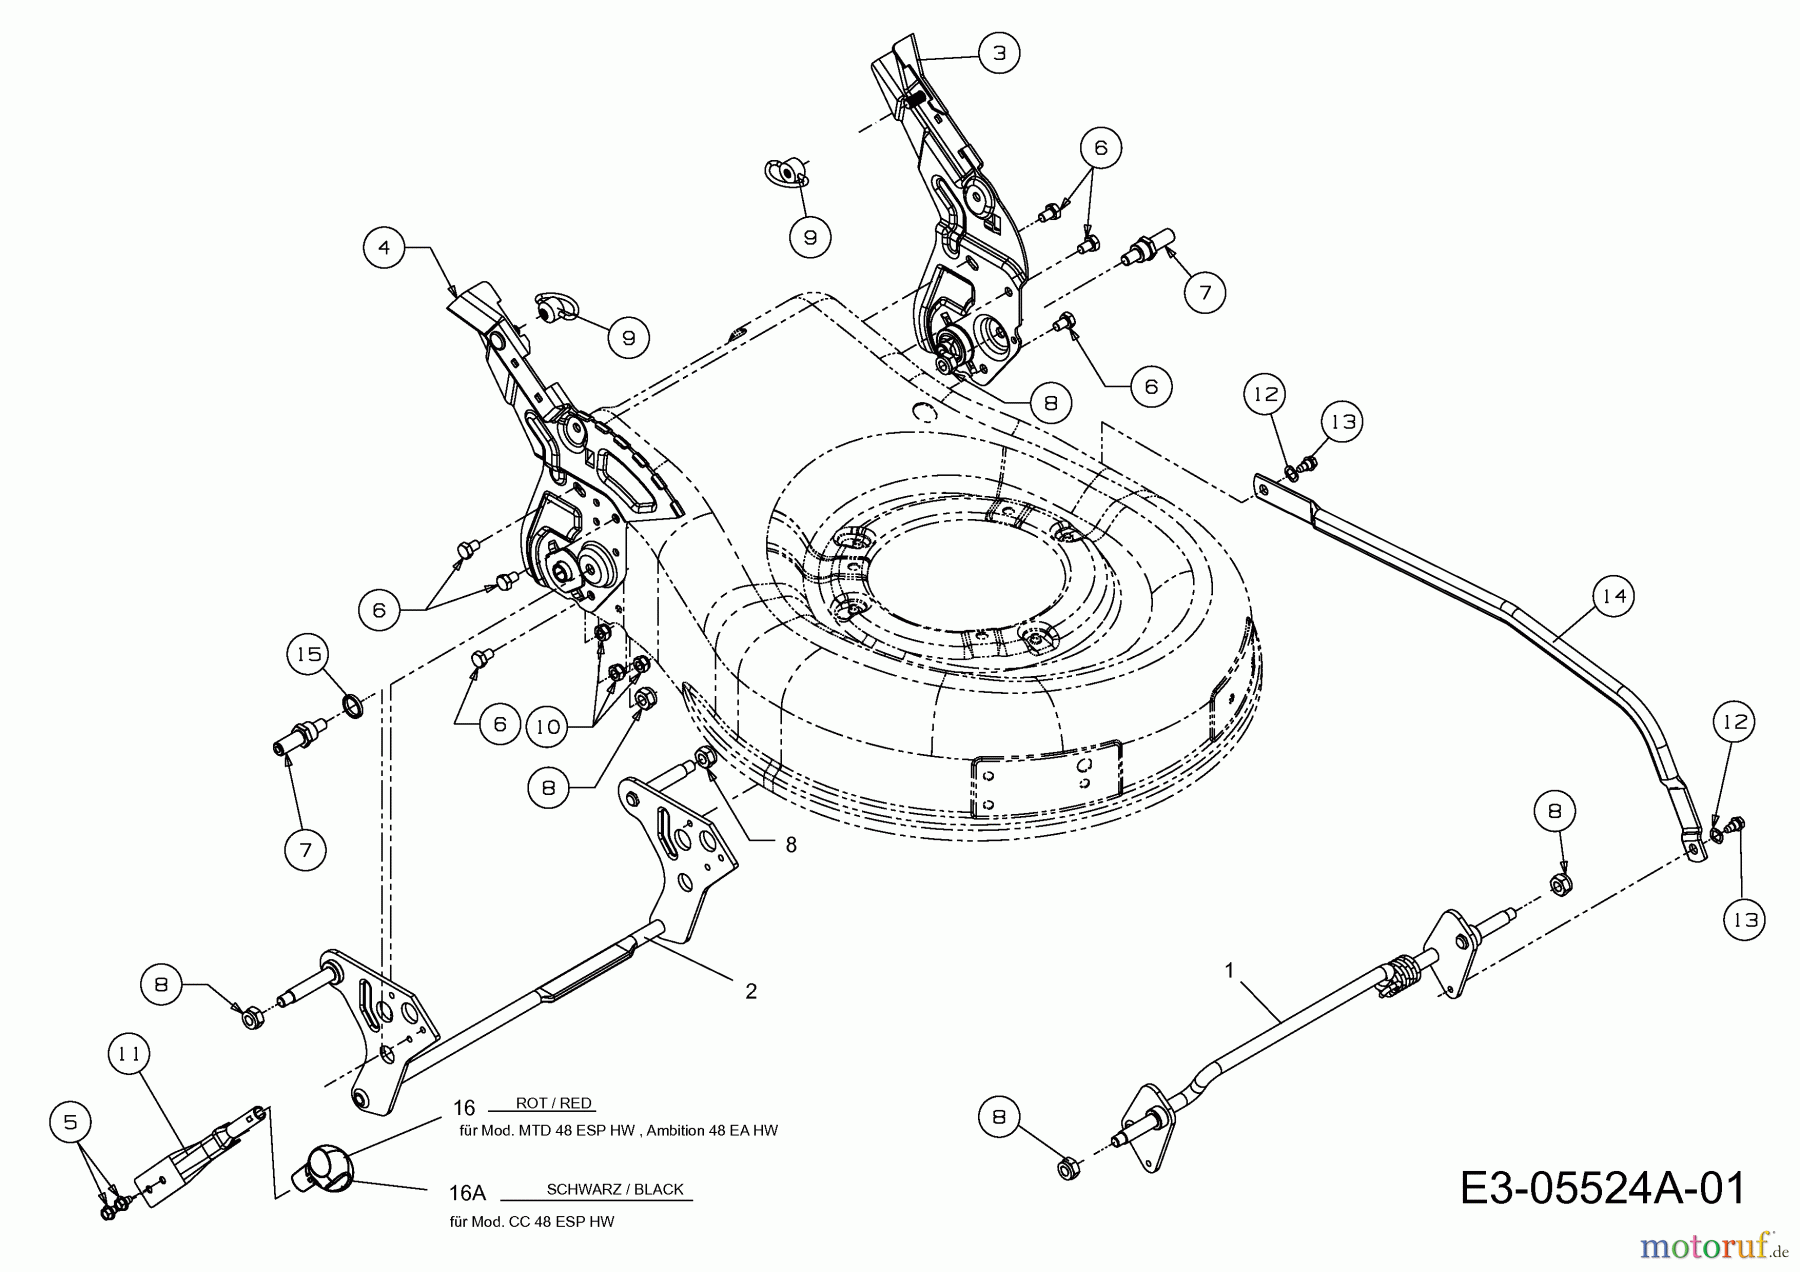  Lux Tools Motormäher mit Antrieb B 48 HMAECO 12A-129L694  (2014) Höhenverstellung